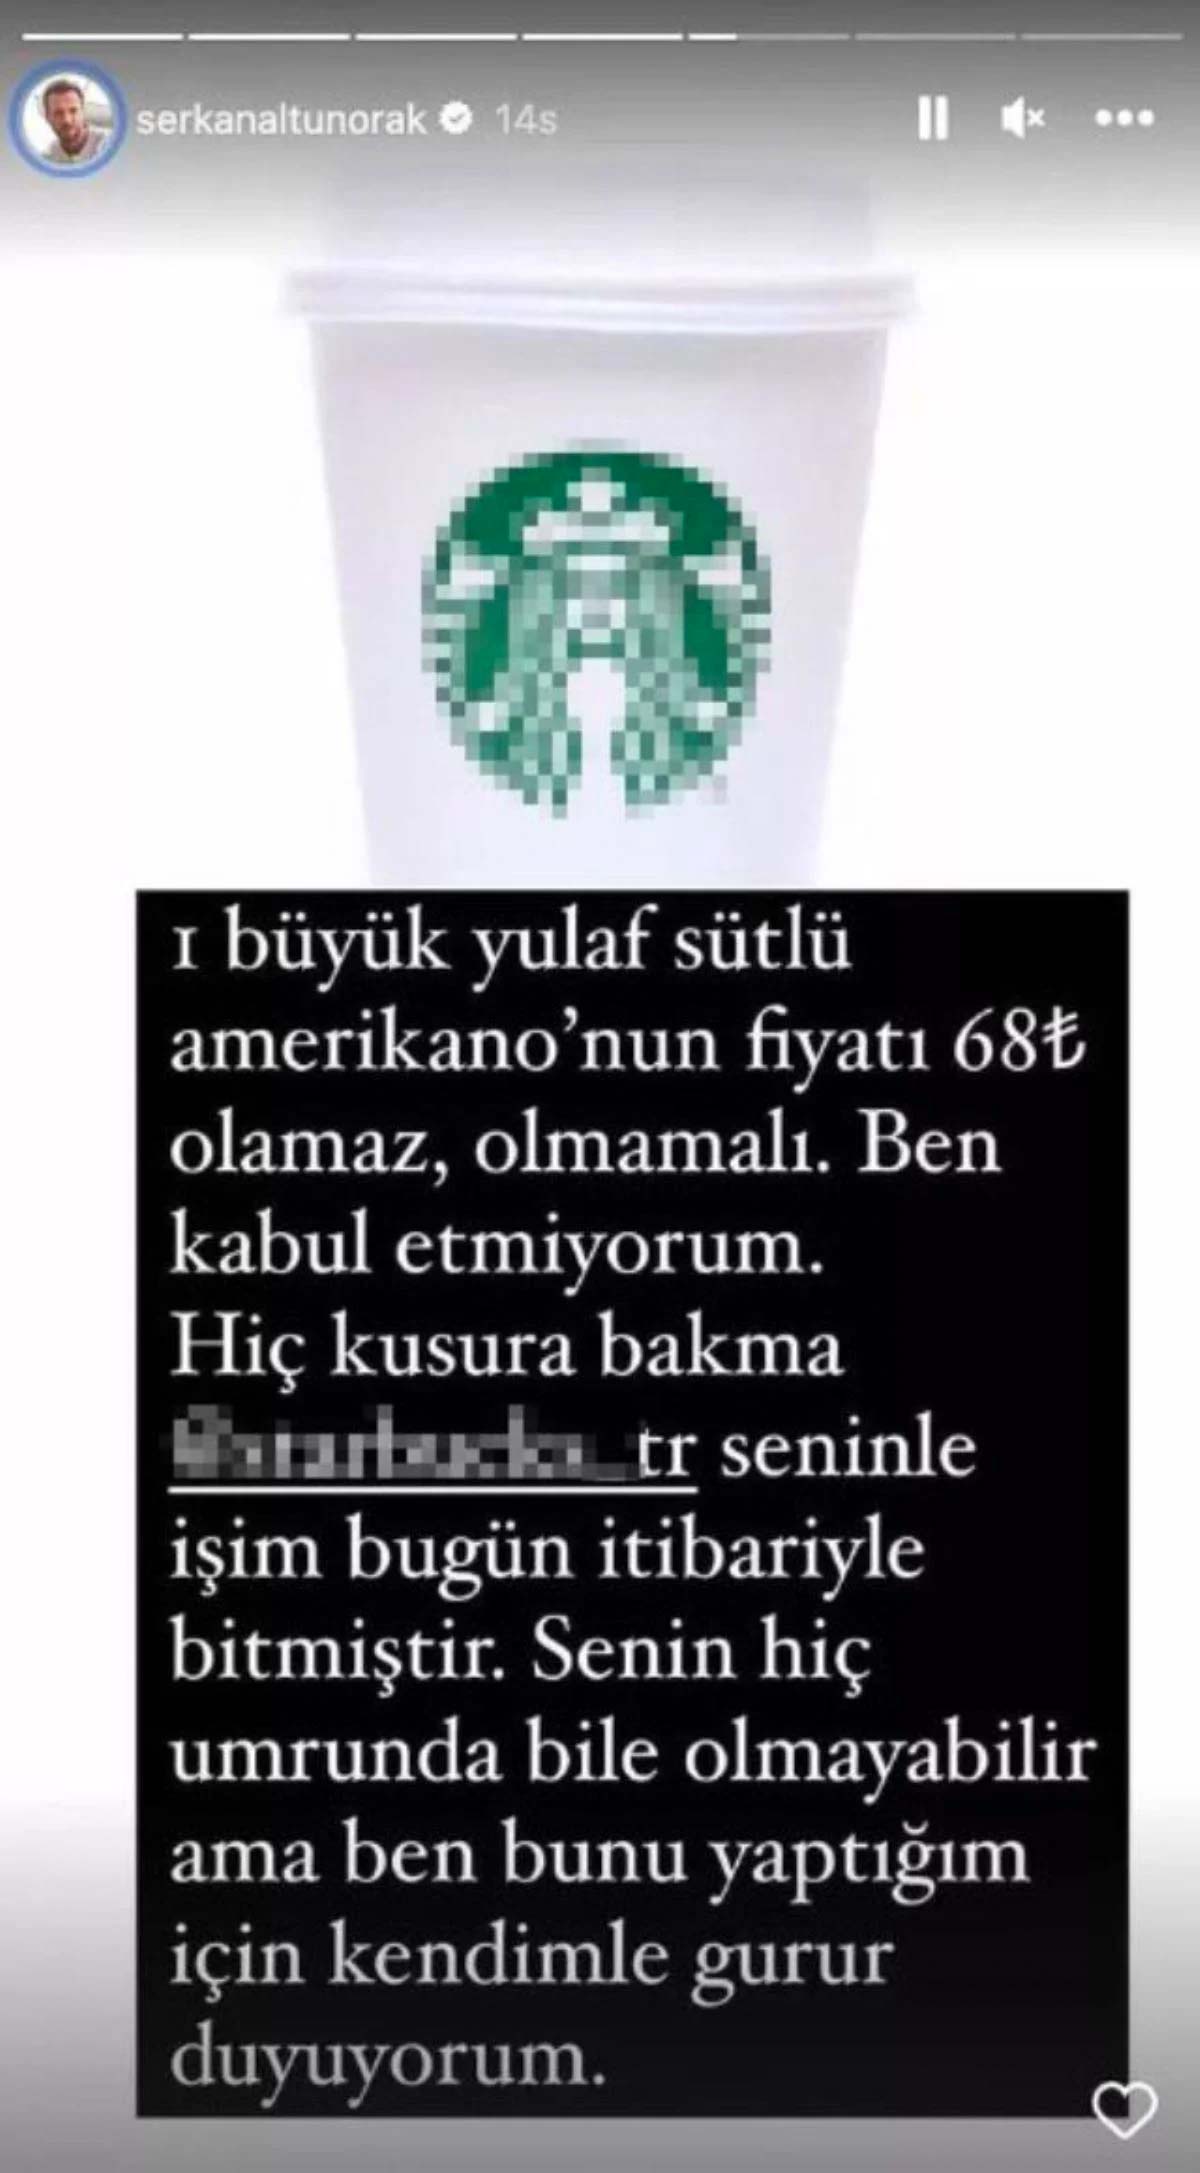 Oyuncu Serkan Altunorak'tan Starbucks zammına sert tepki: 'Seninle işim bitmiştir'